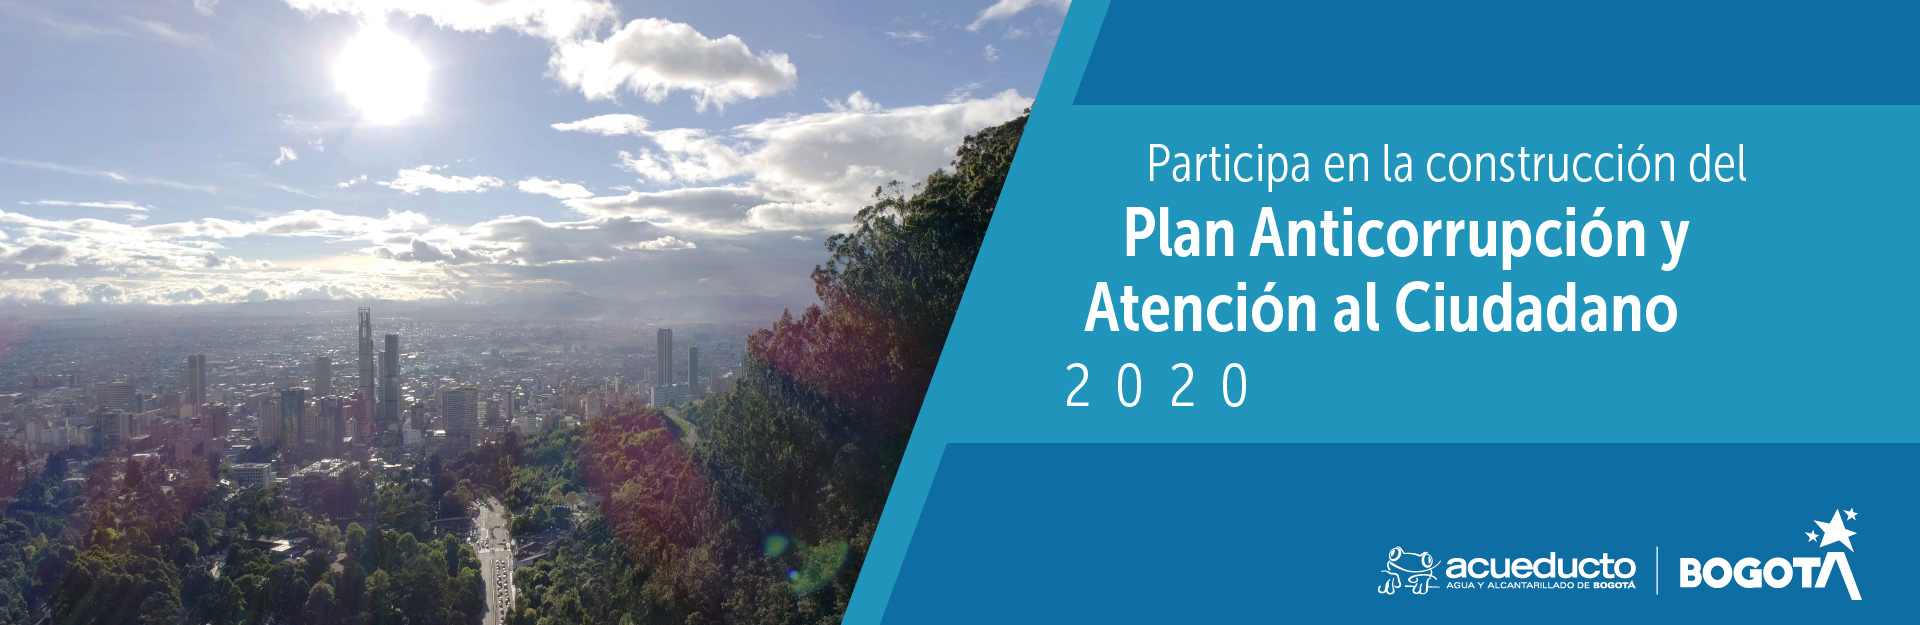 Participa en la construcción del Plan Anticorrupción y Atención al Ciudadano 2020